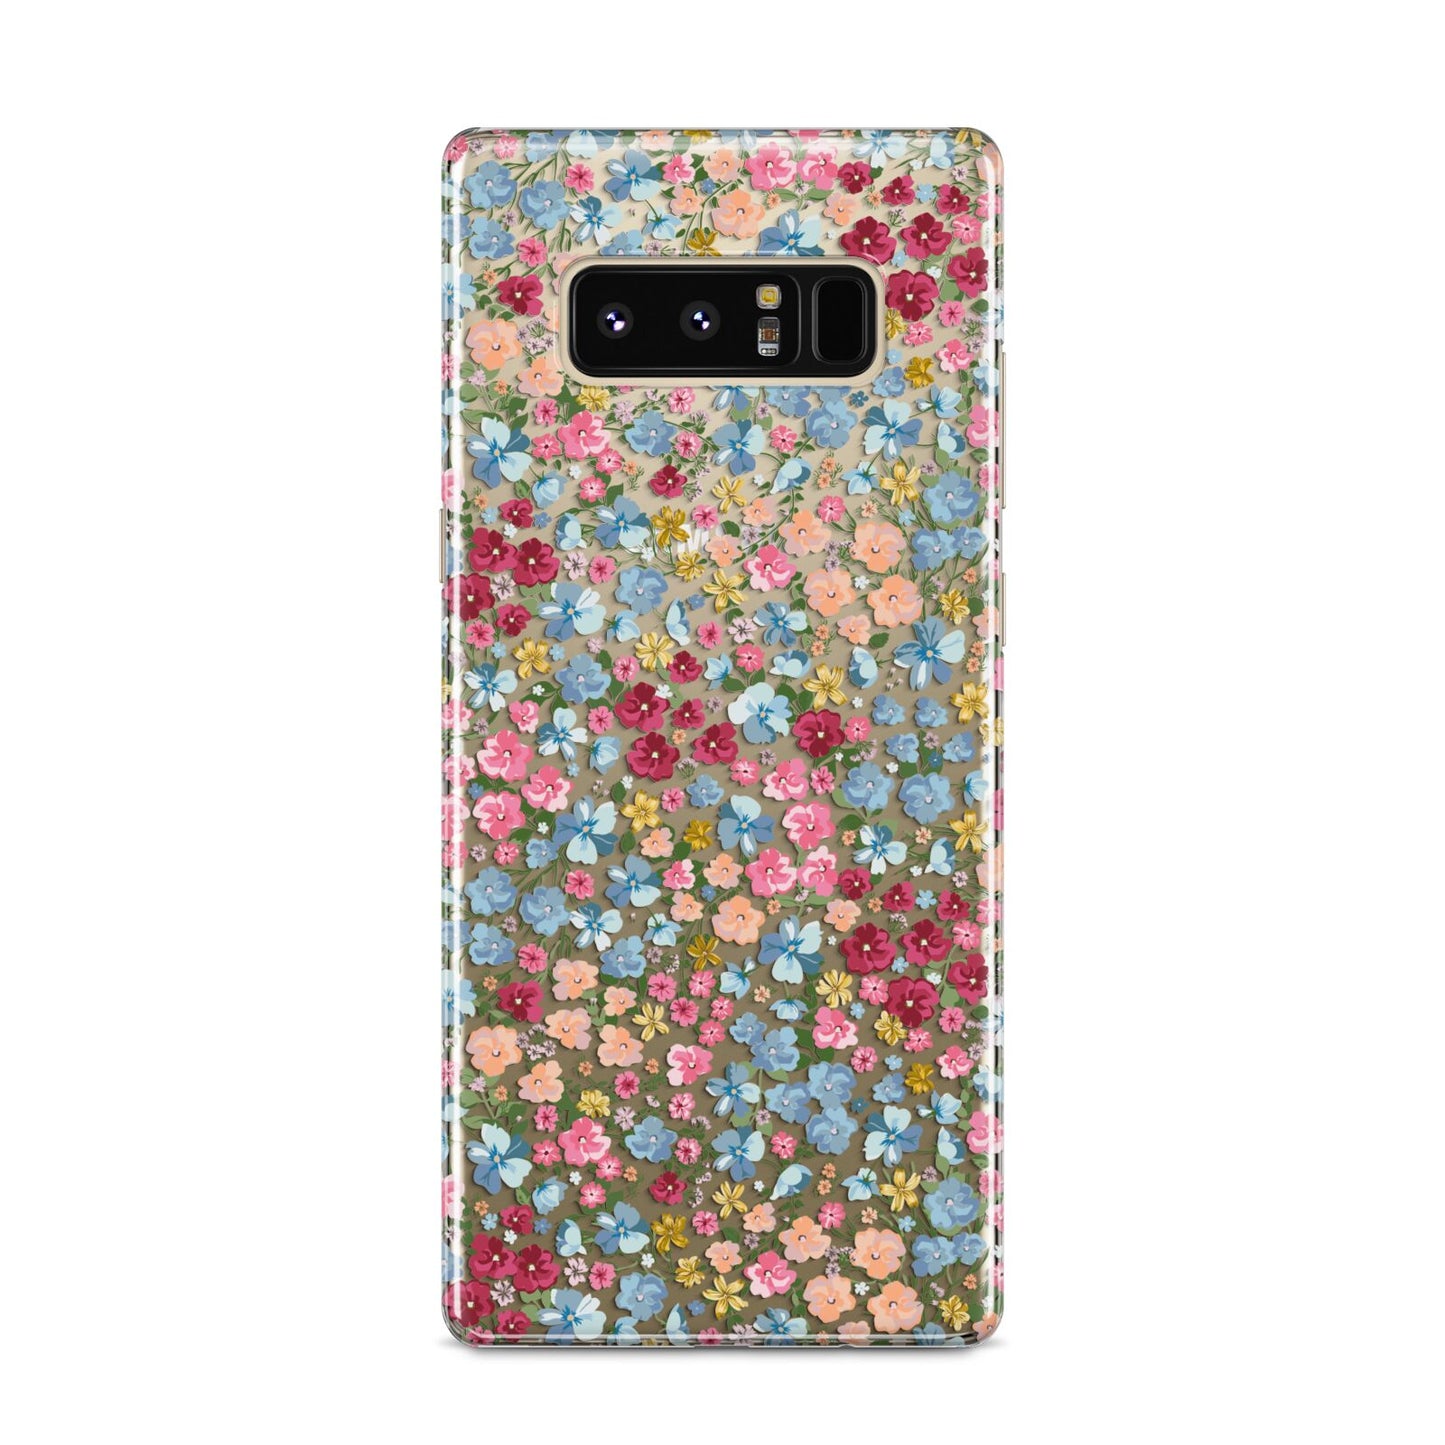 Floral Meadow Samsung Galaxy S8 Case